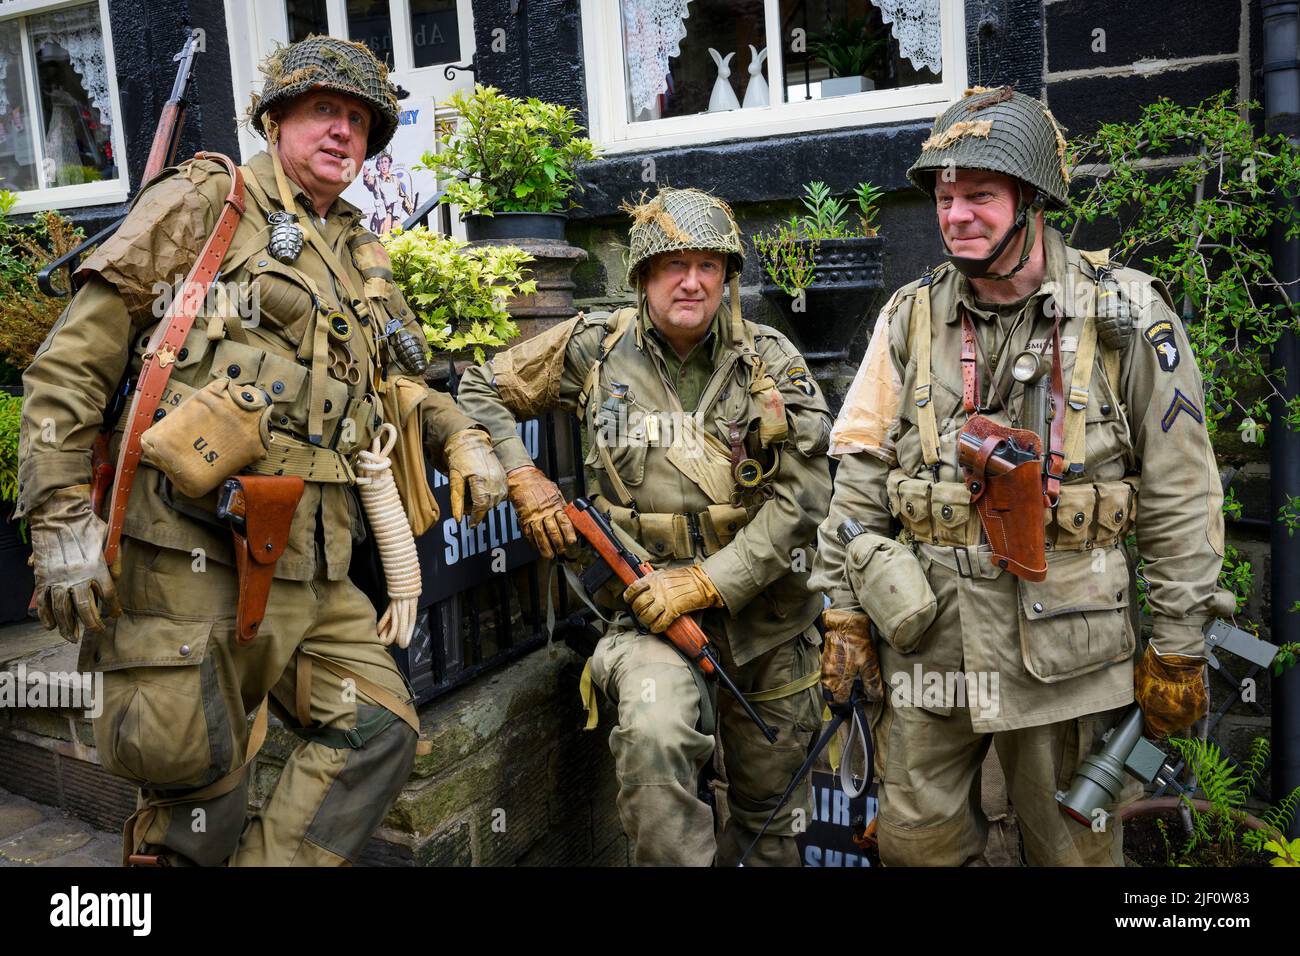 Haworth 1940er-Wochenende (Männer in Khaki WW2-Kostüm als Soldaten der 101. Airborne Division „Screaming Eagles“) - Main Street, West Yorkshire, England. Stockfoto